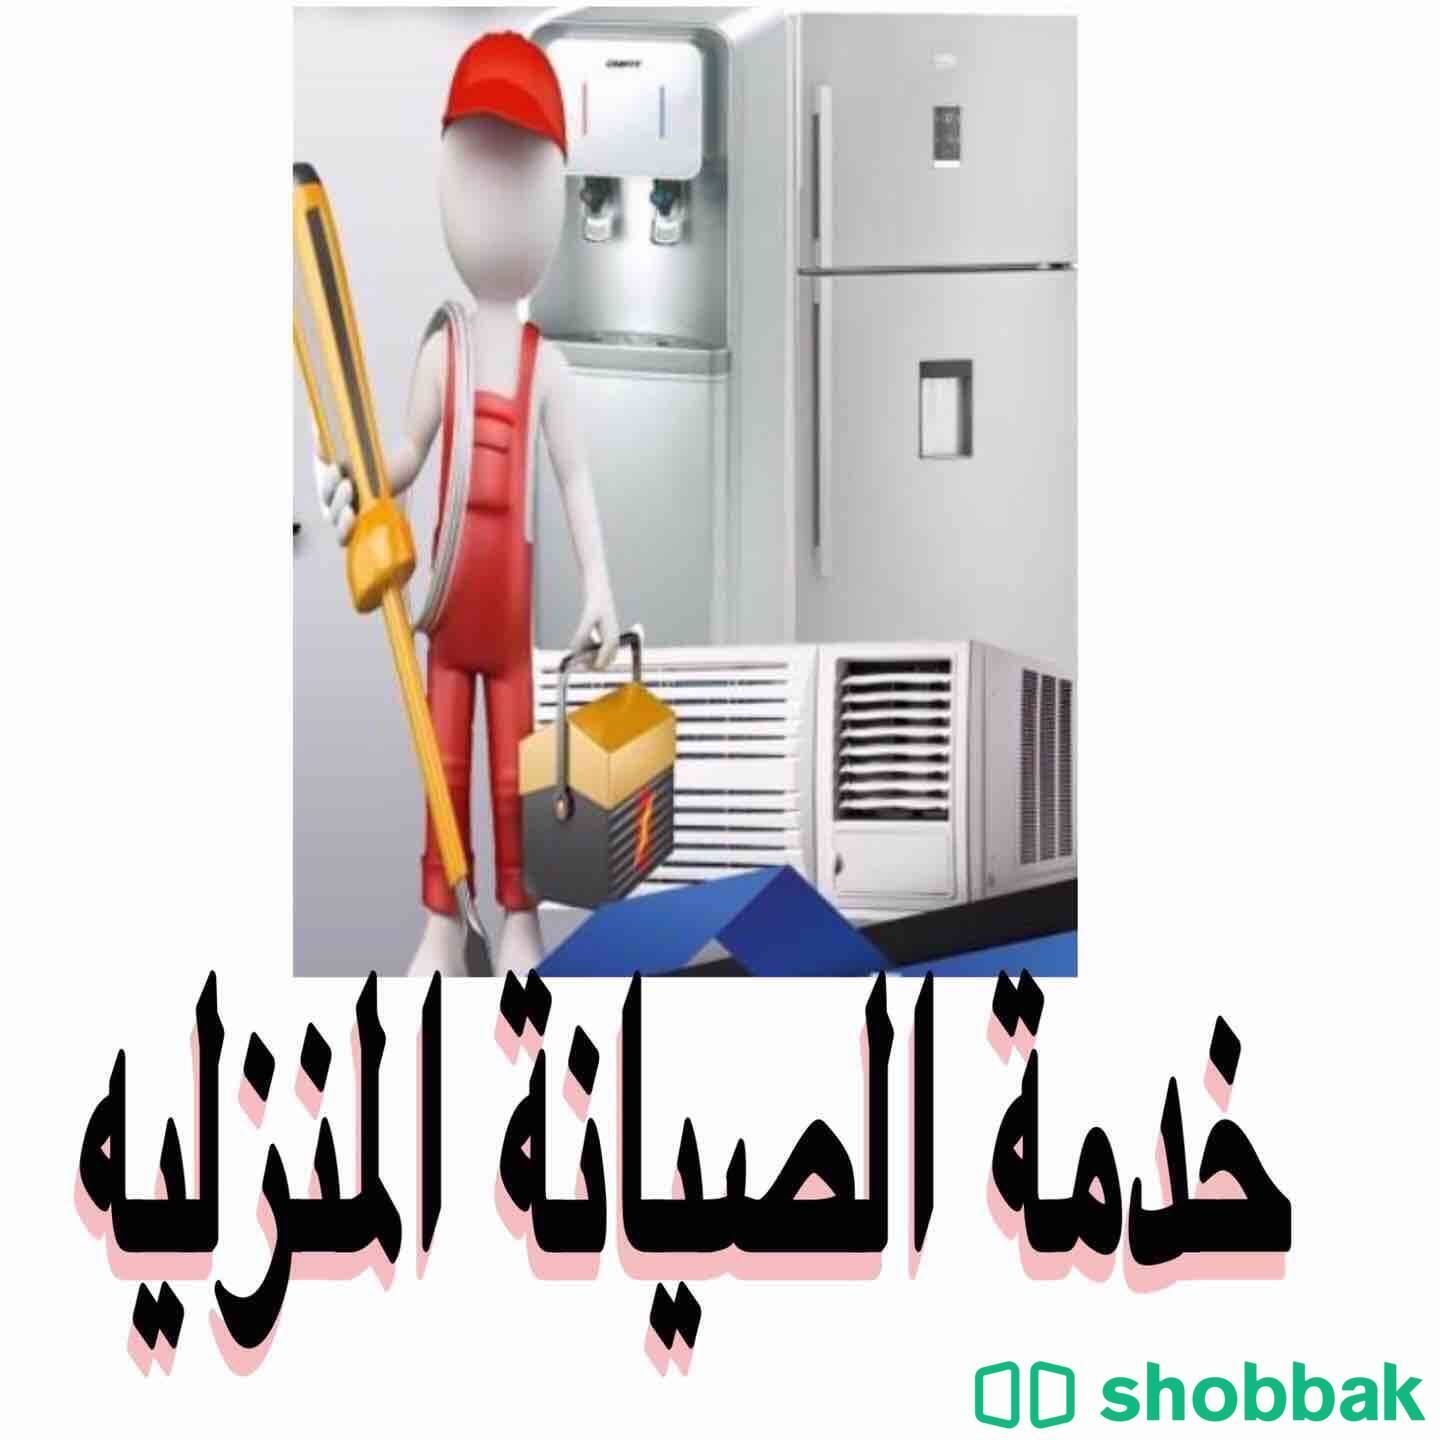 الخدمة المنزلية ( صيانة وتركيب وغسيل المكيفات بأنواعها) Shobbak Saudi Arabia